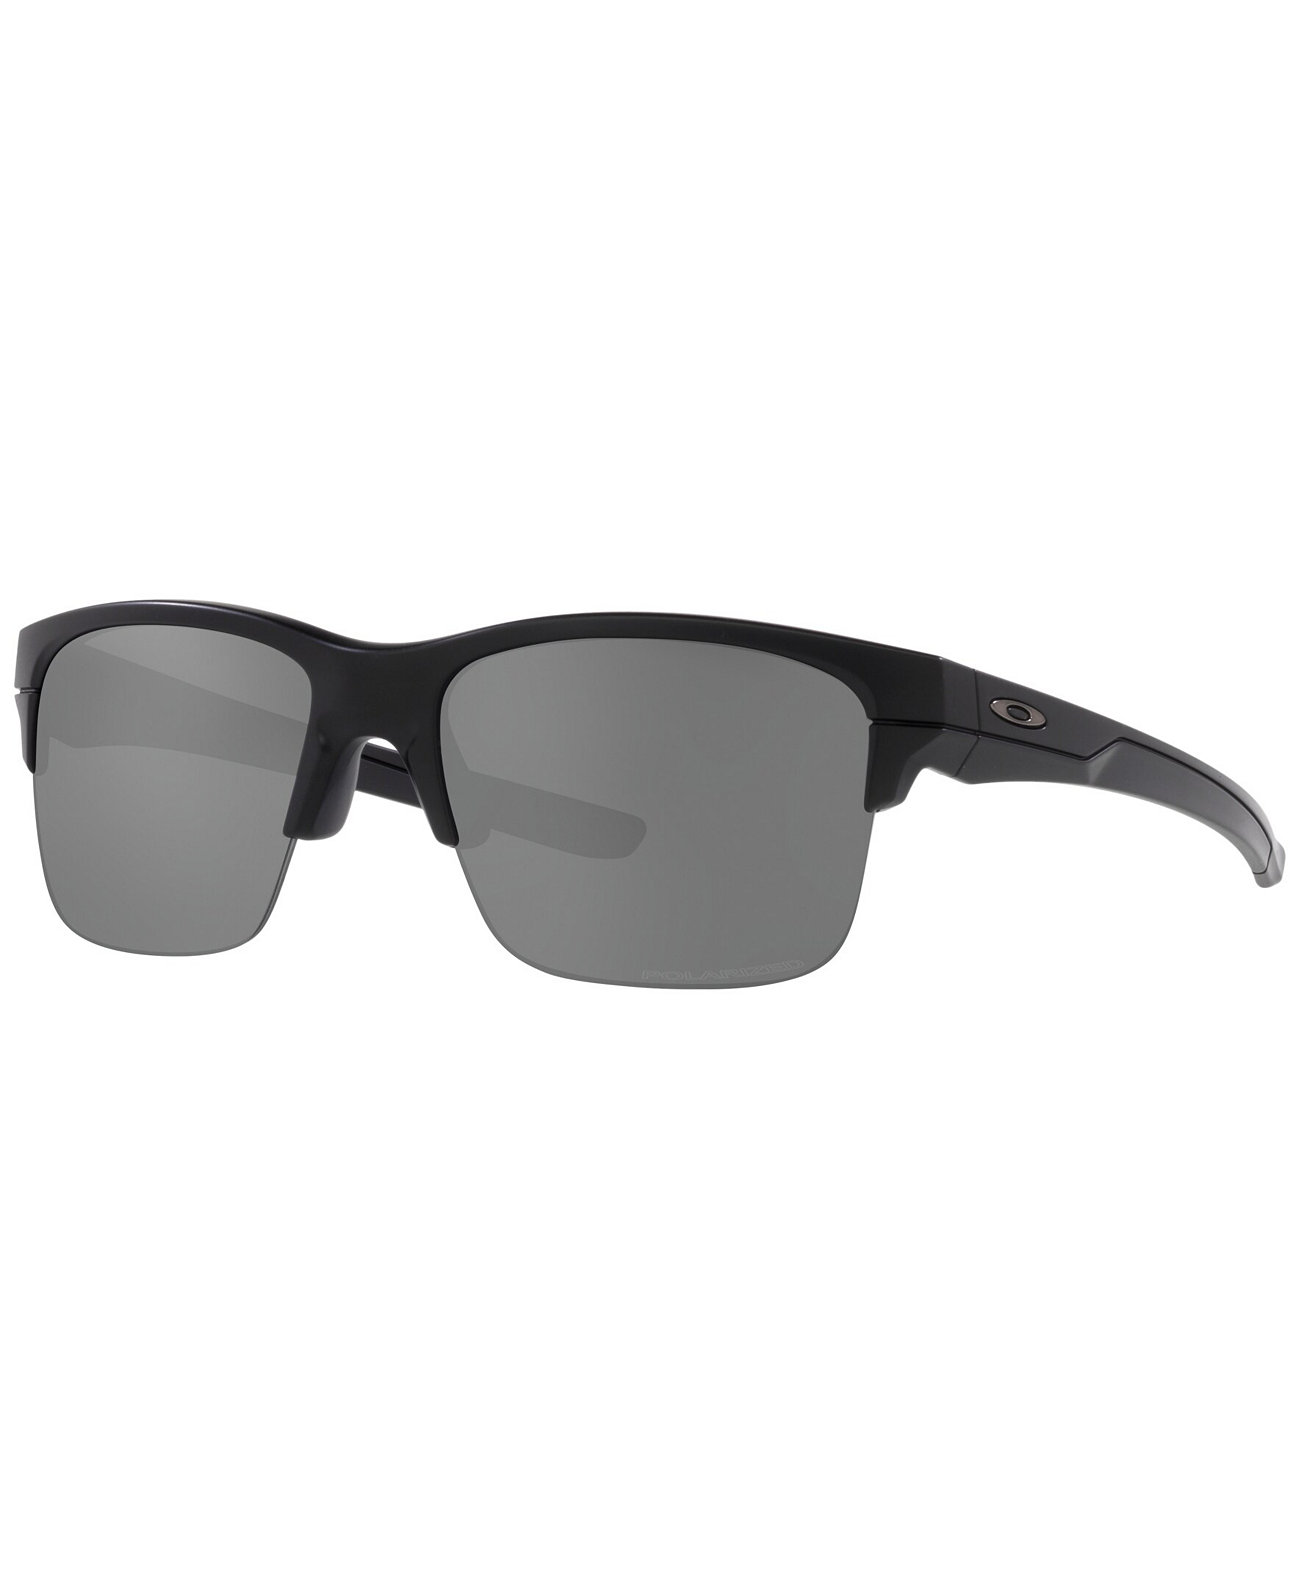 Мужские поляризованные солнцезащитные очки, OO9316 Thinlink 63 Oakley